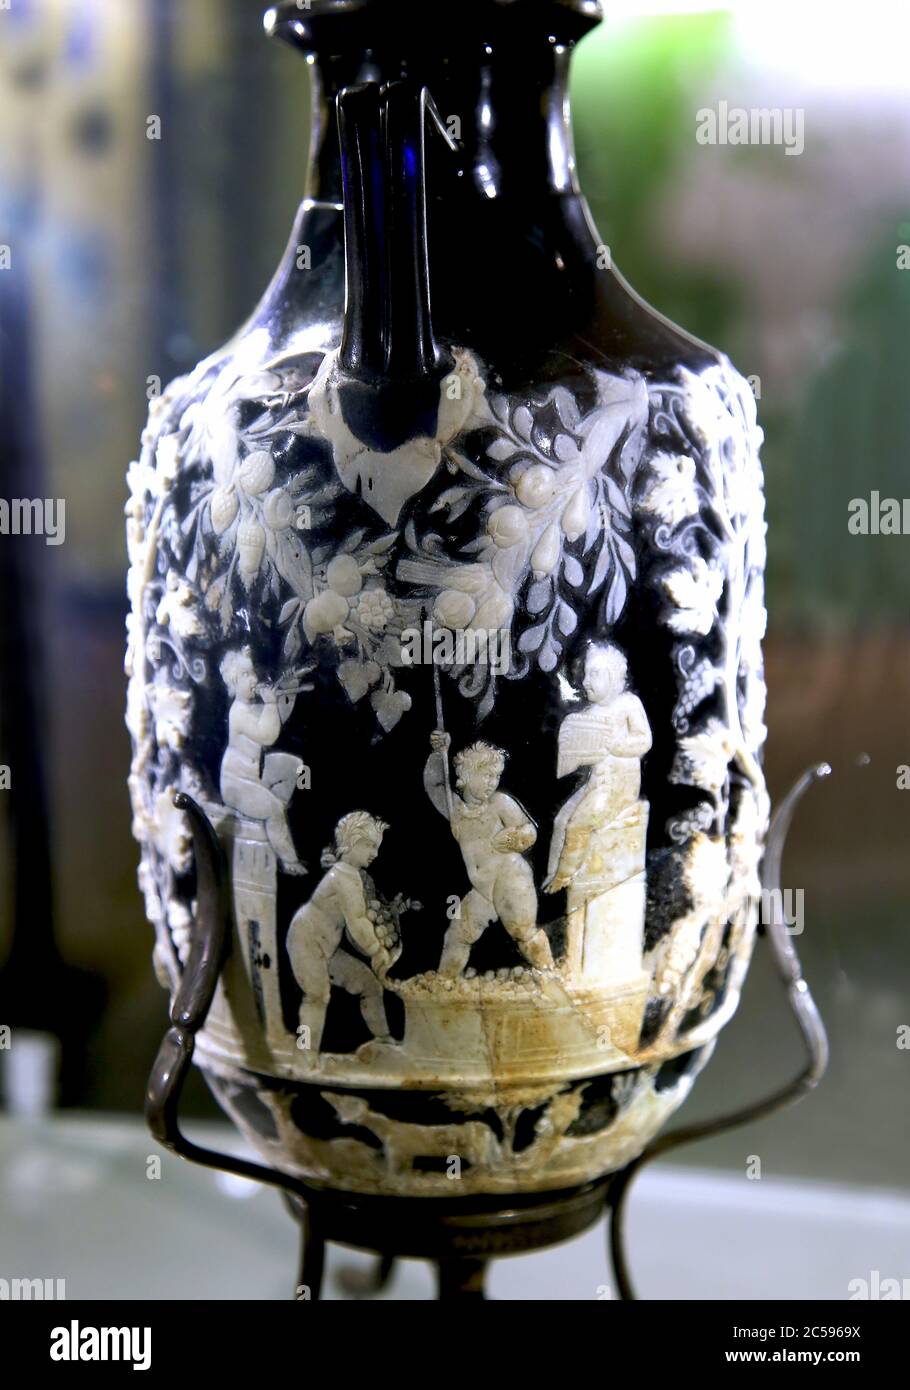 Amphoriskos connu comme le vase bleu. Vase en verre Cameo avec cupids. De Pompéi. 1er siècle après J.-C. Musée archéologique de Naples, Italie. Banque D'Images